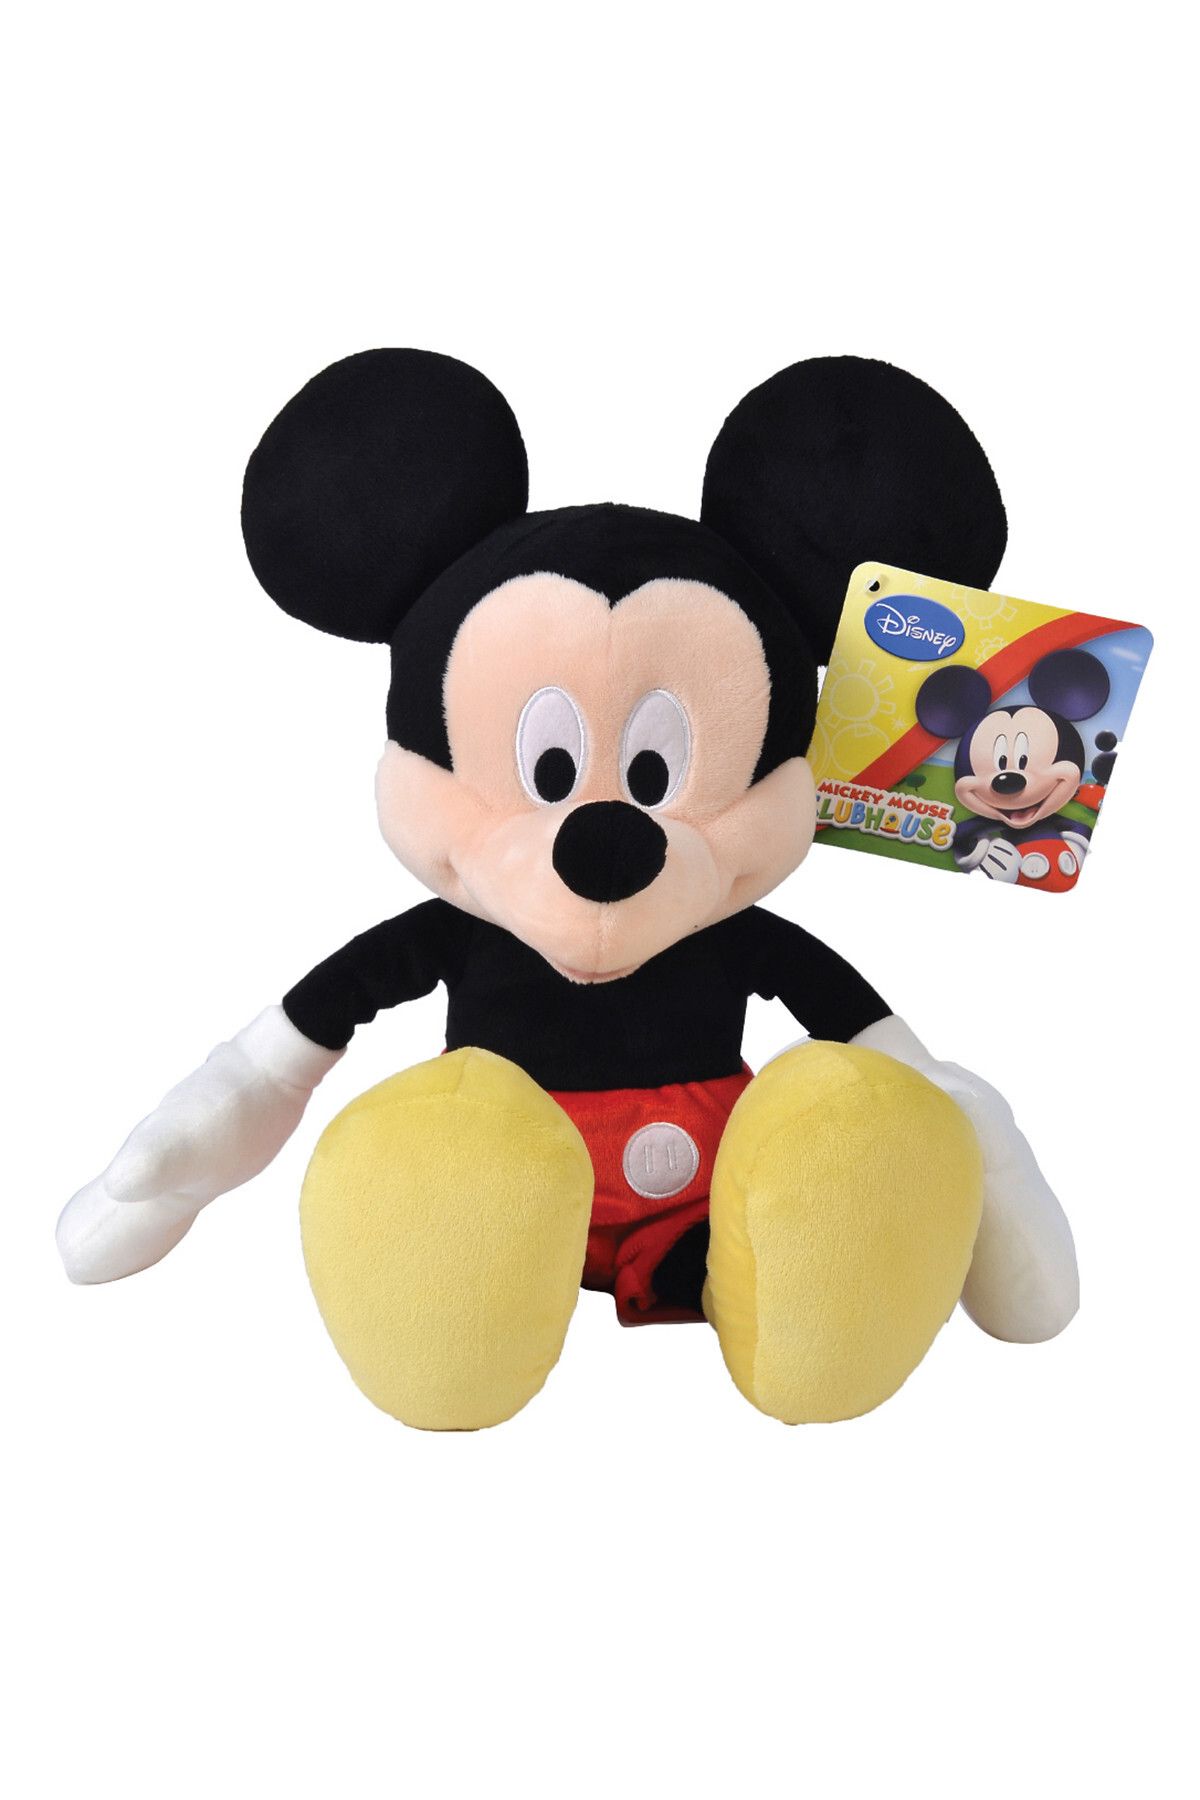 DİSNEY Disney Mickey Mouse Peluş Oyuncak 43 Cm /